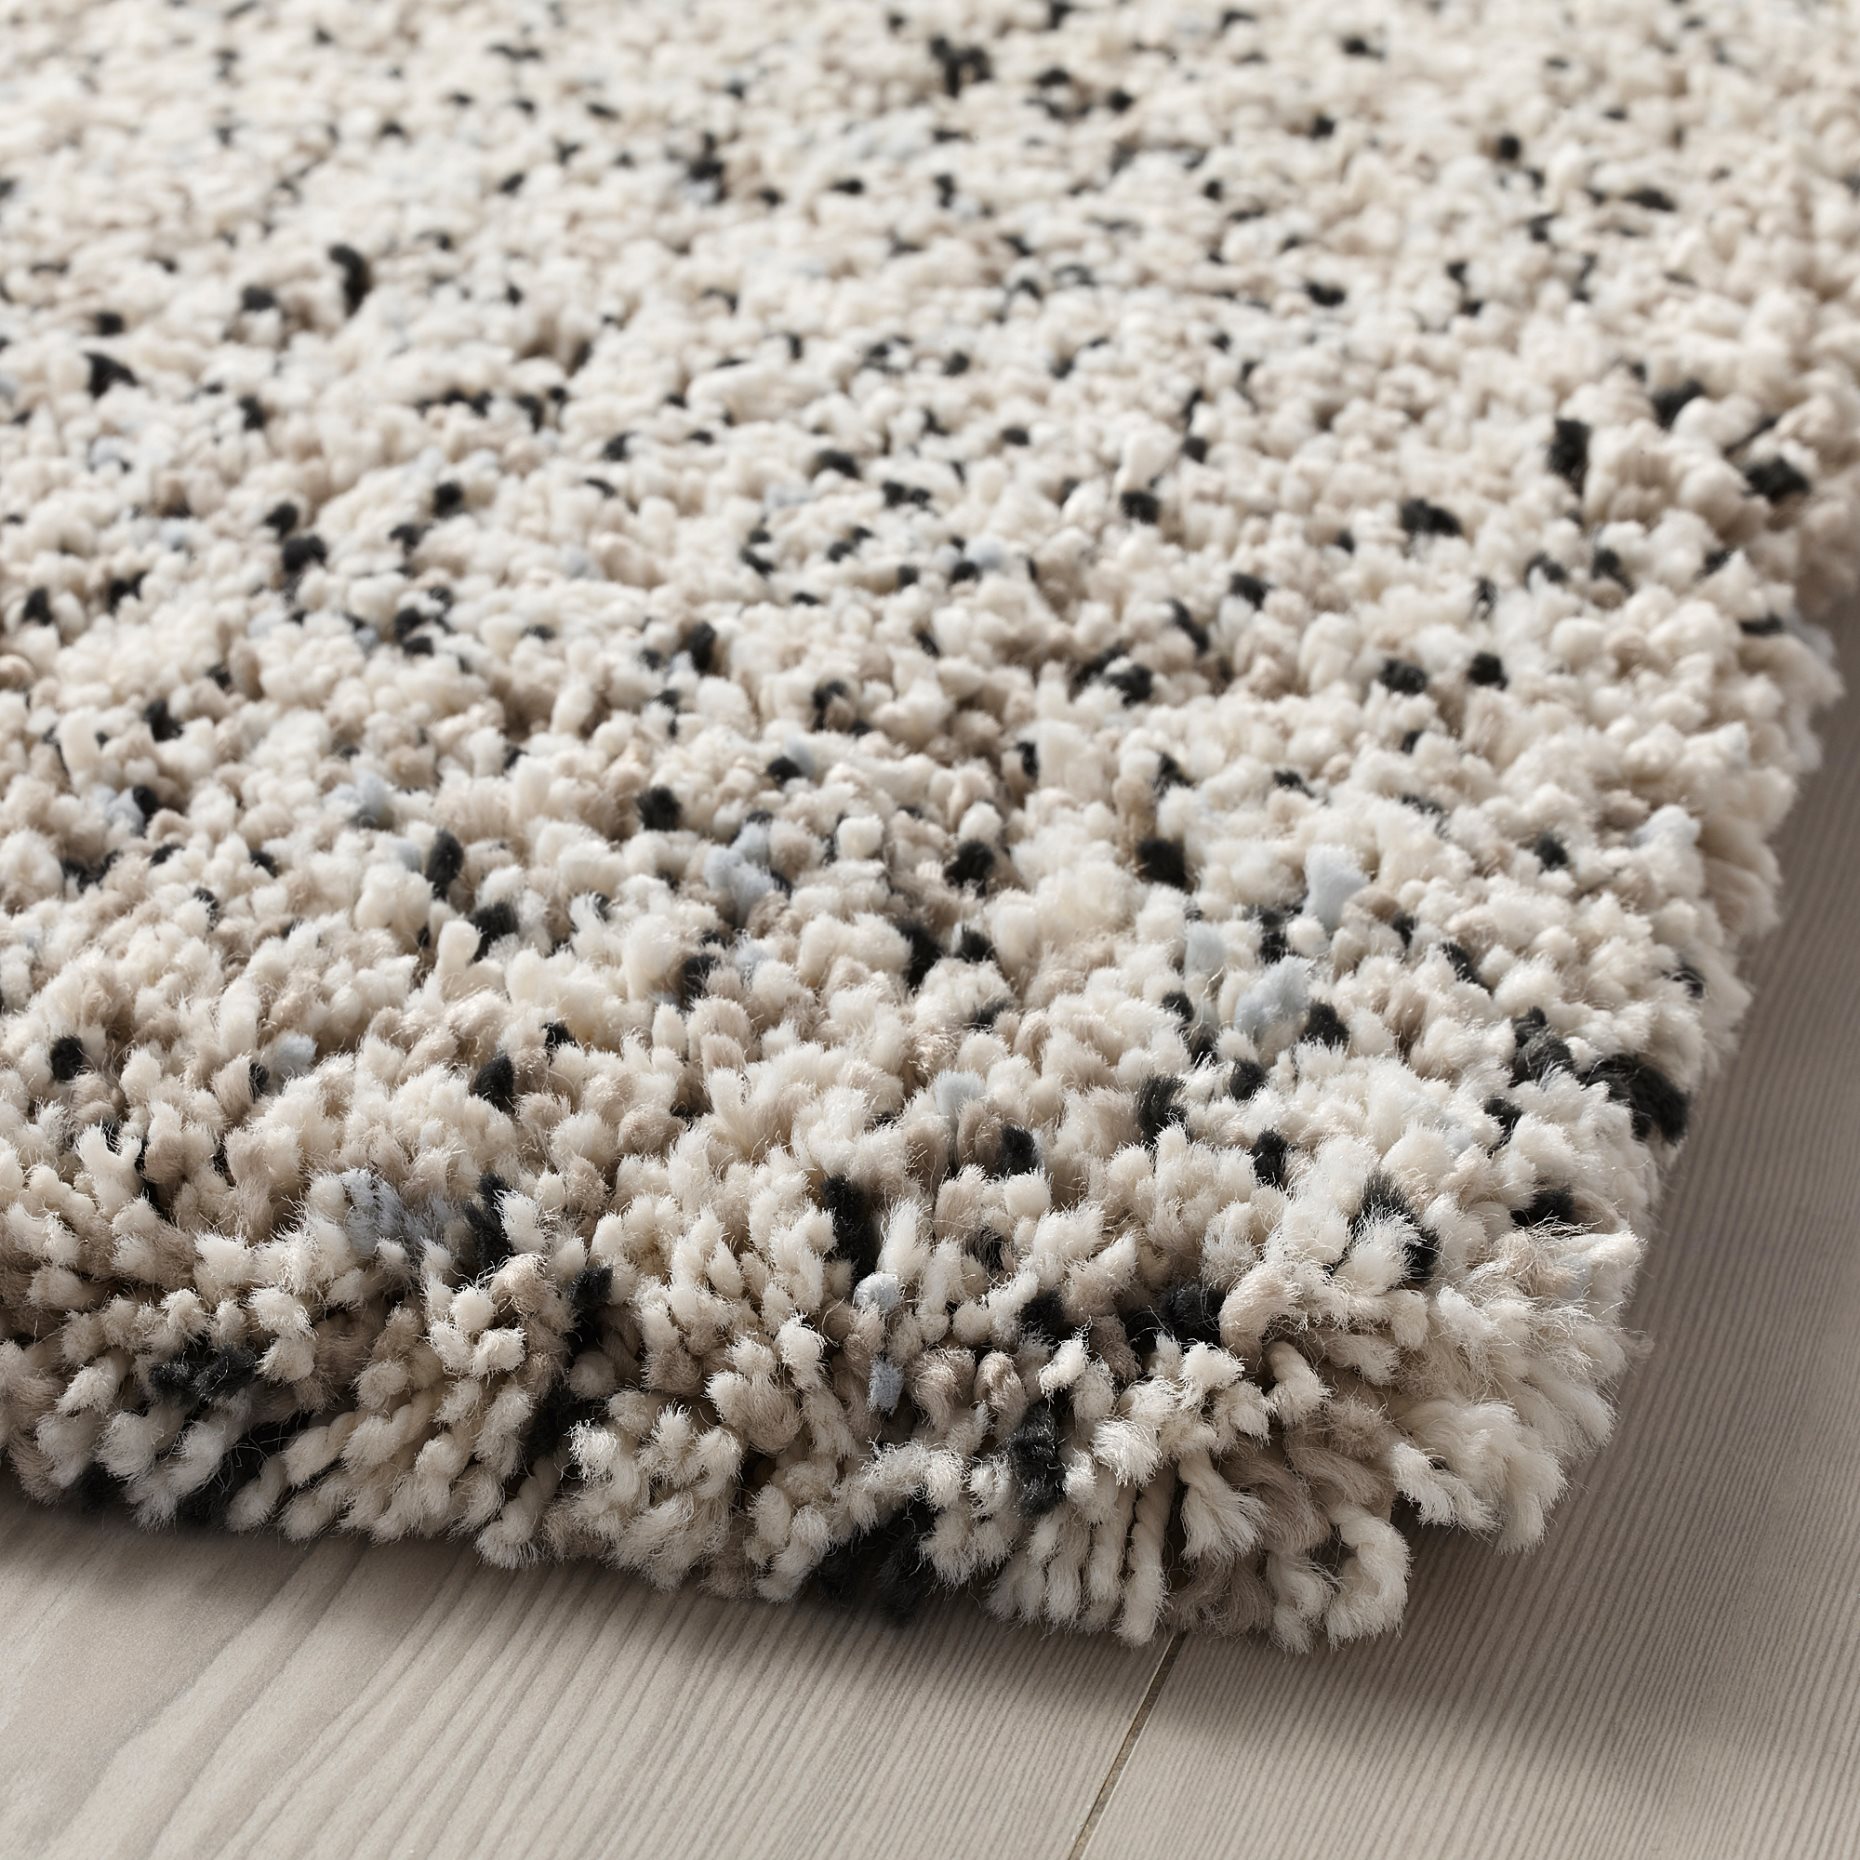 VINDUM, rug high pile, 170x230 cm, 503.449.86